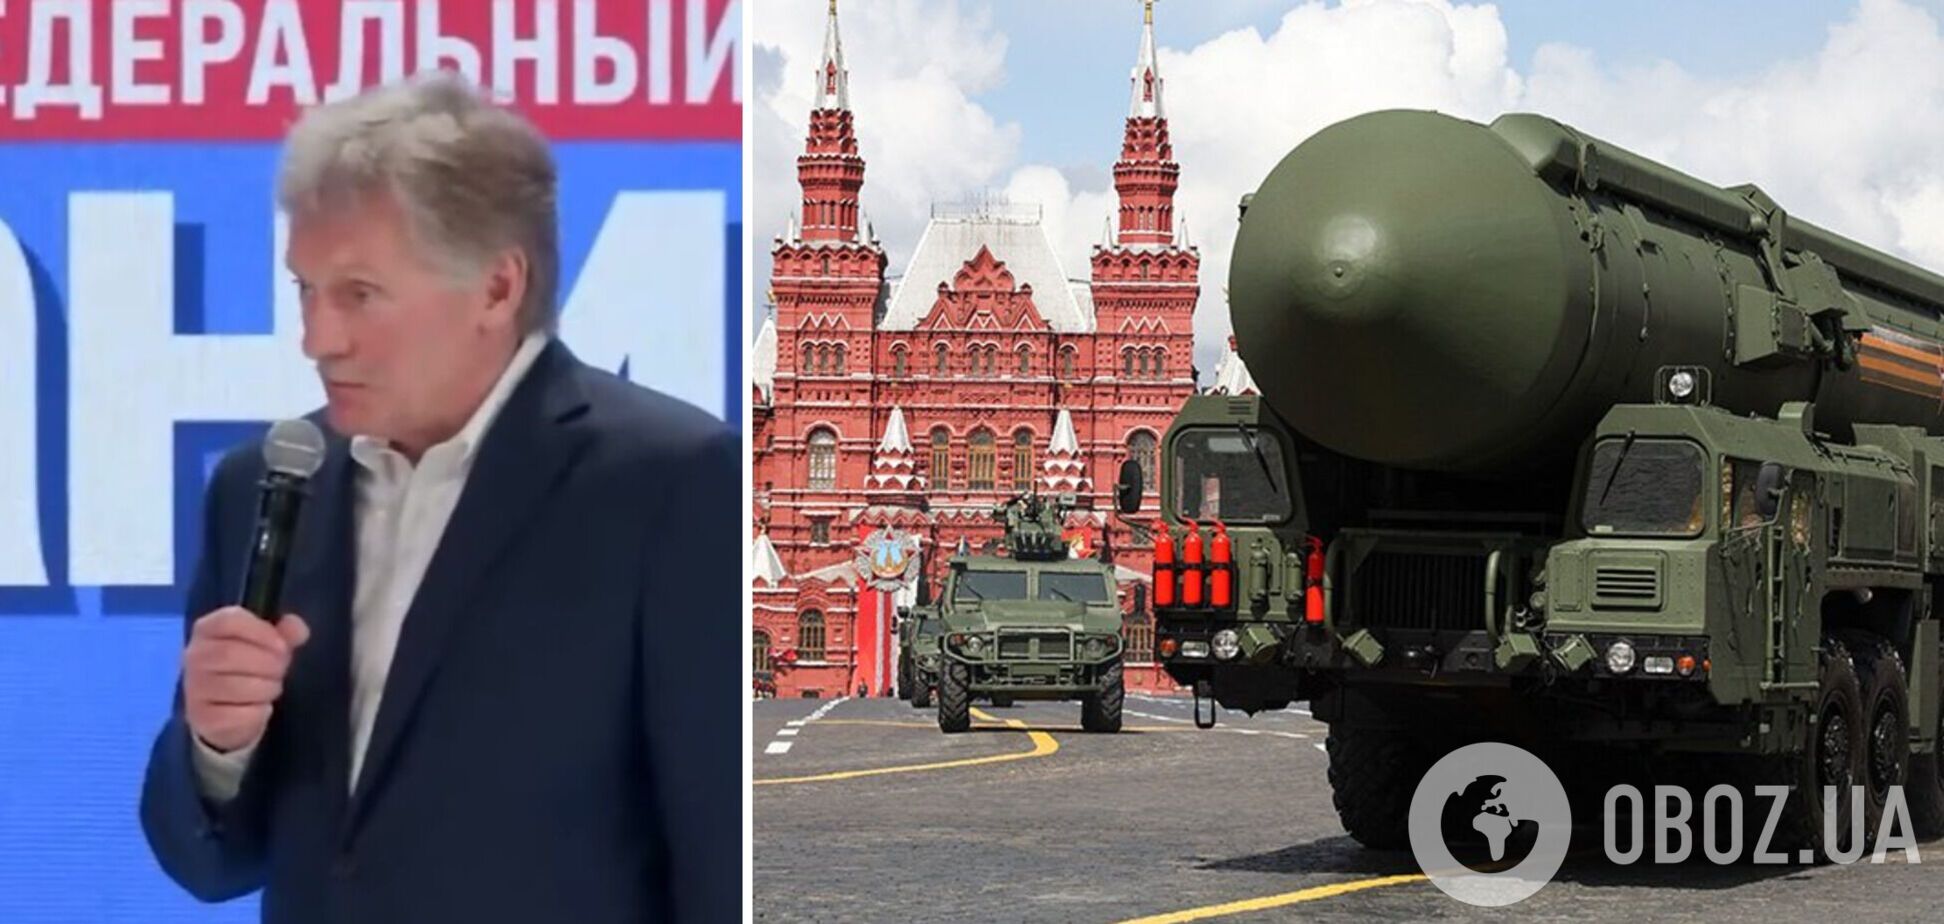 'Если что-то будет угрожать': в Кремле назвали условие ядерной войны и упомянули 'СВО' против Украины